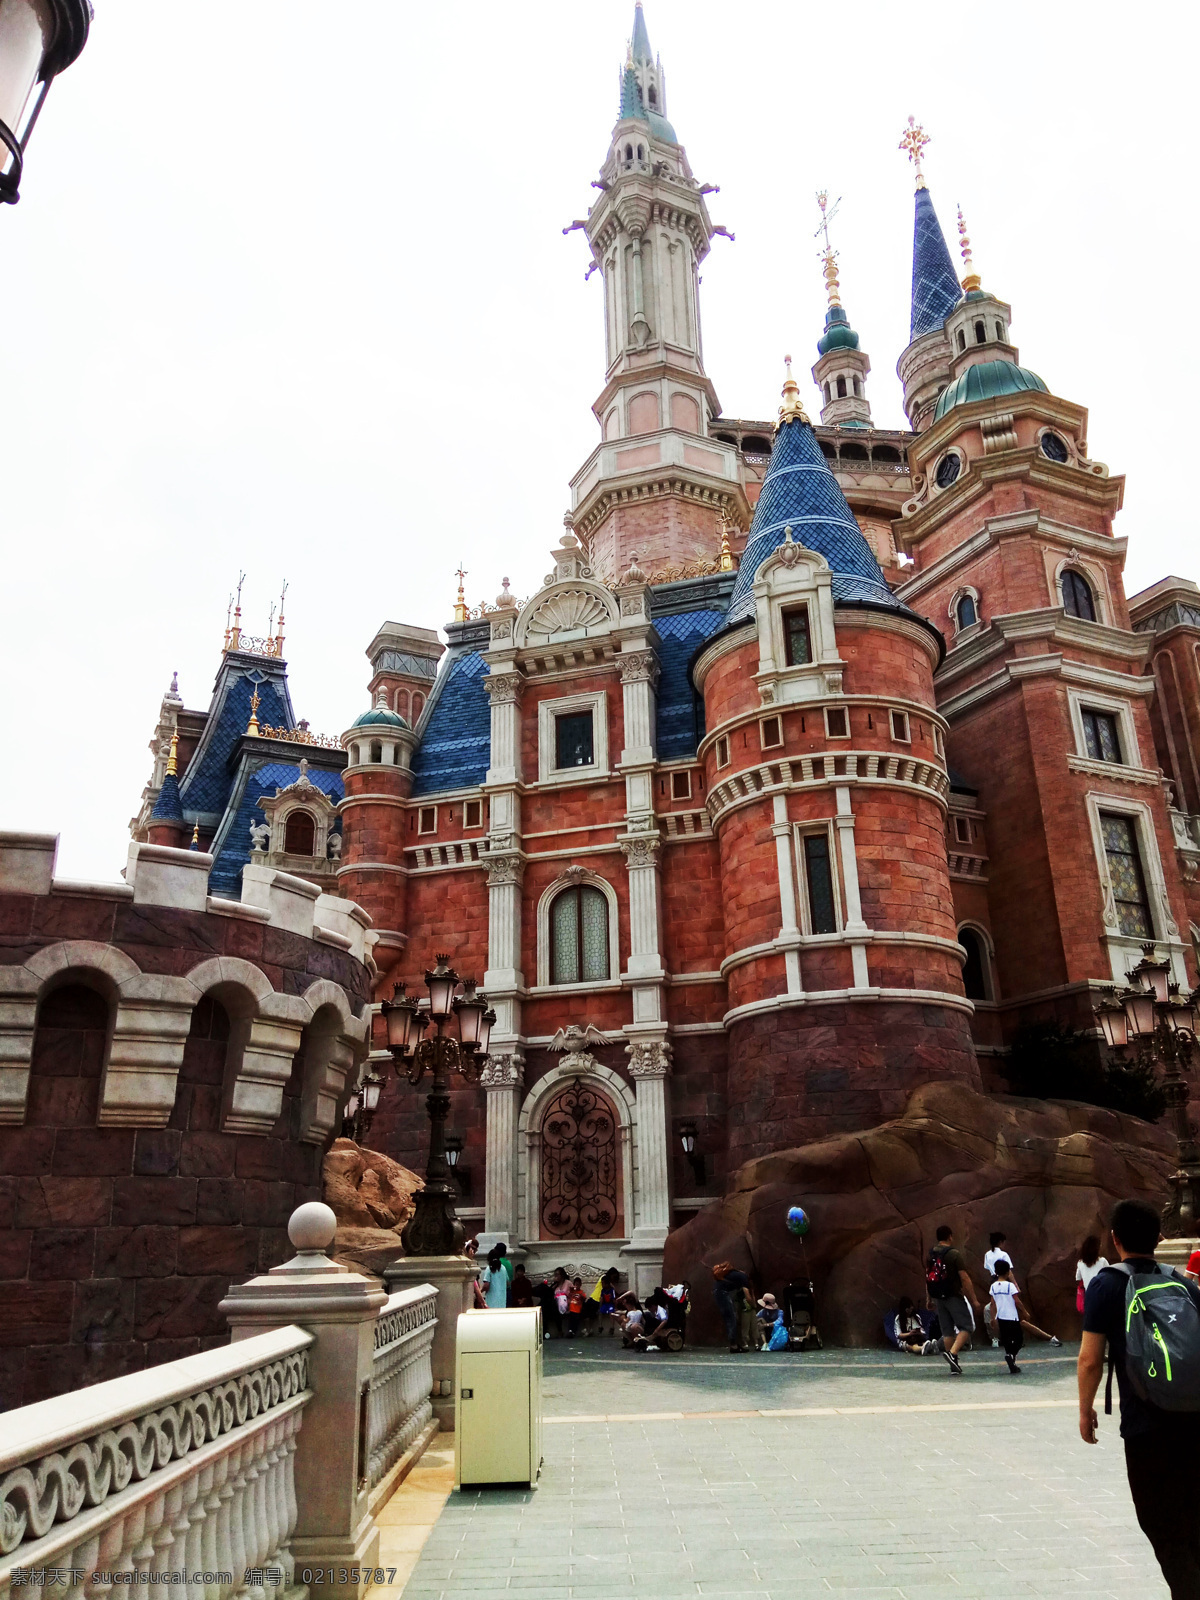 迪士尼城堡 城堡 迪士尼近照 欧洲城堡 艾莎城堡 建筑园林 建筑摄影